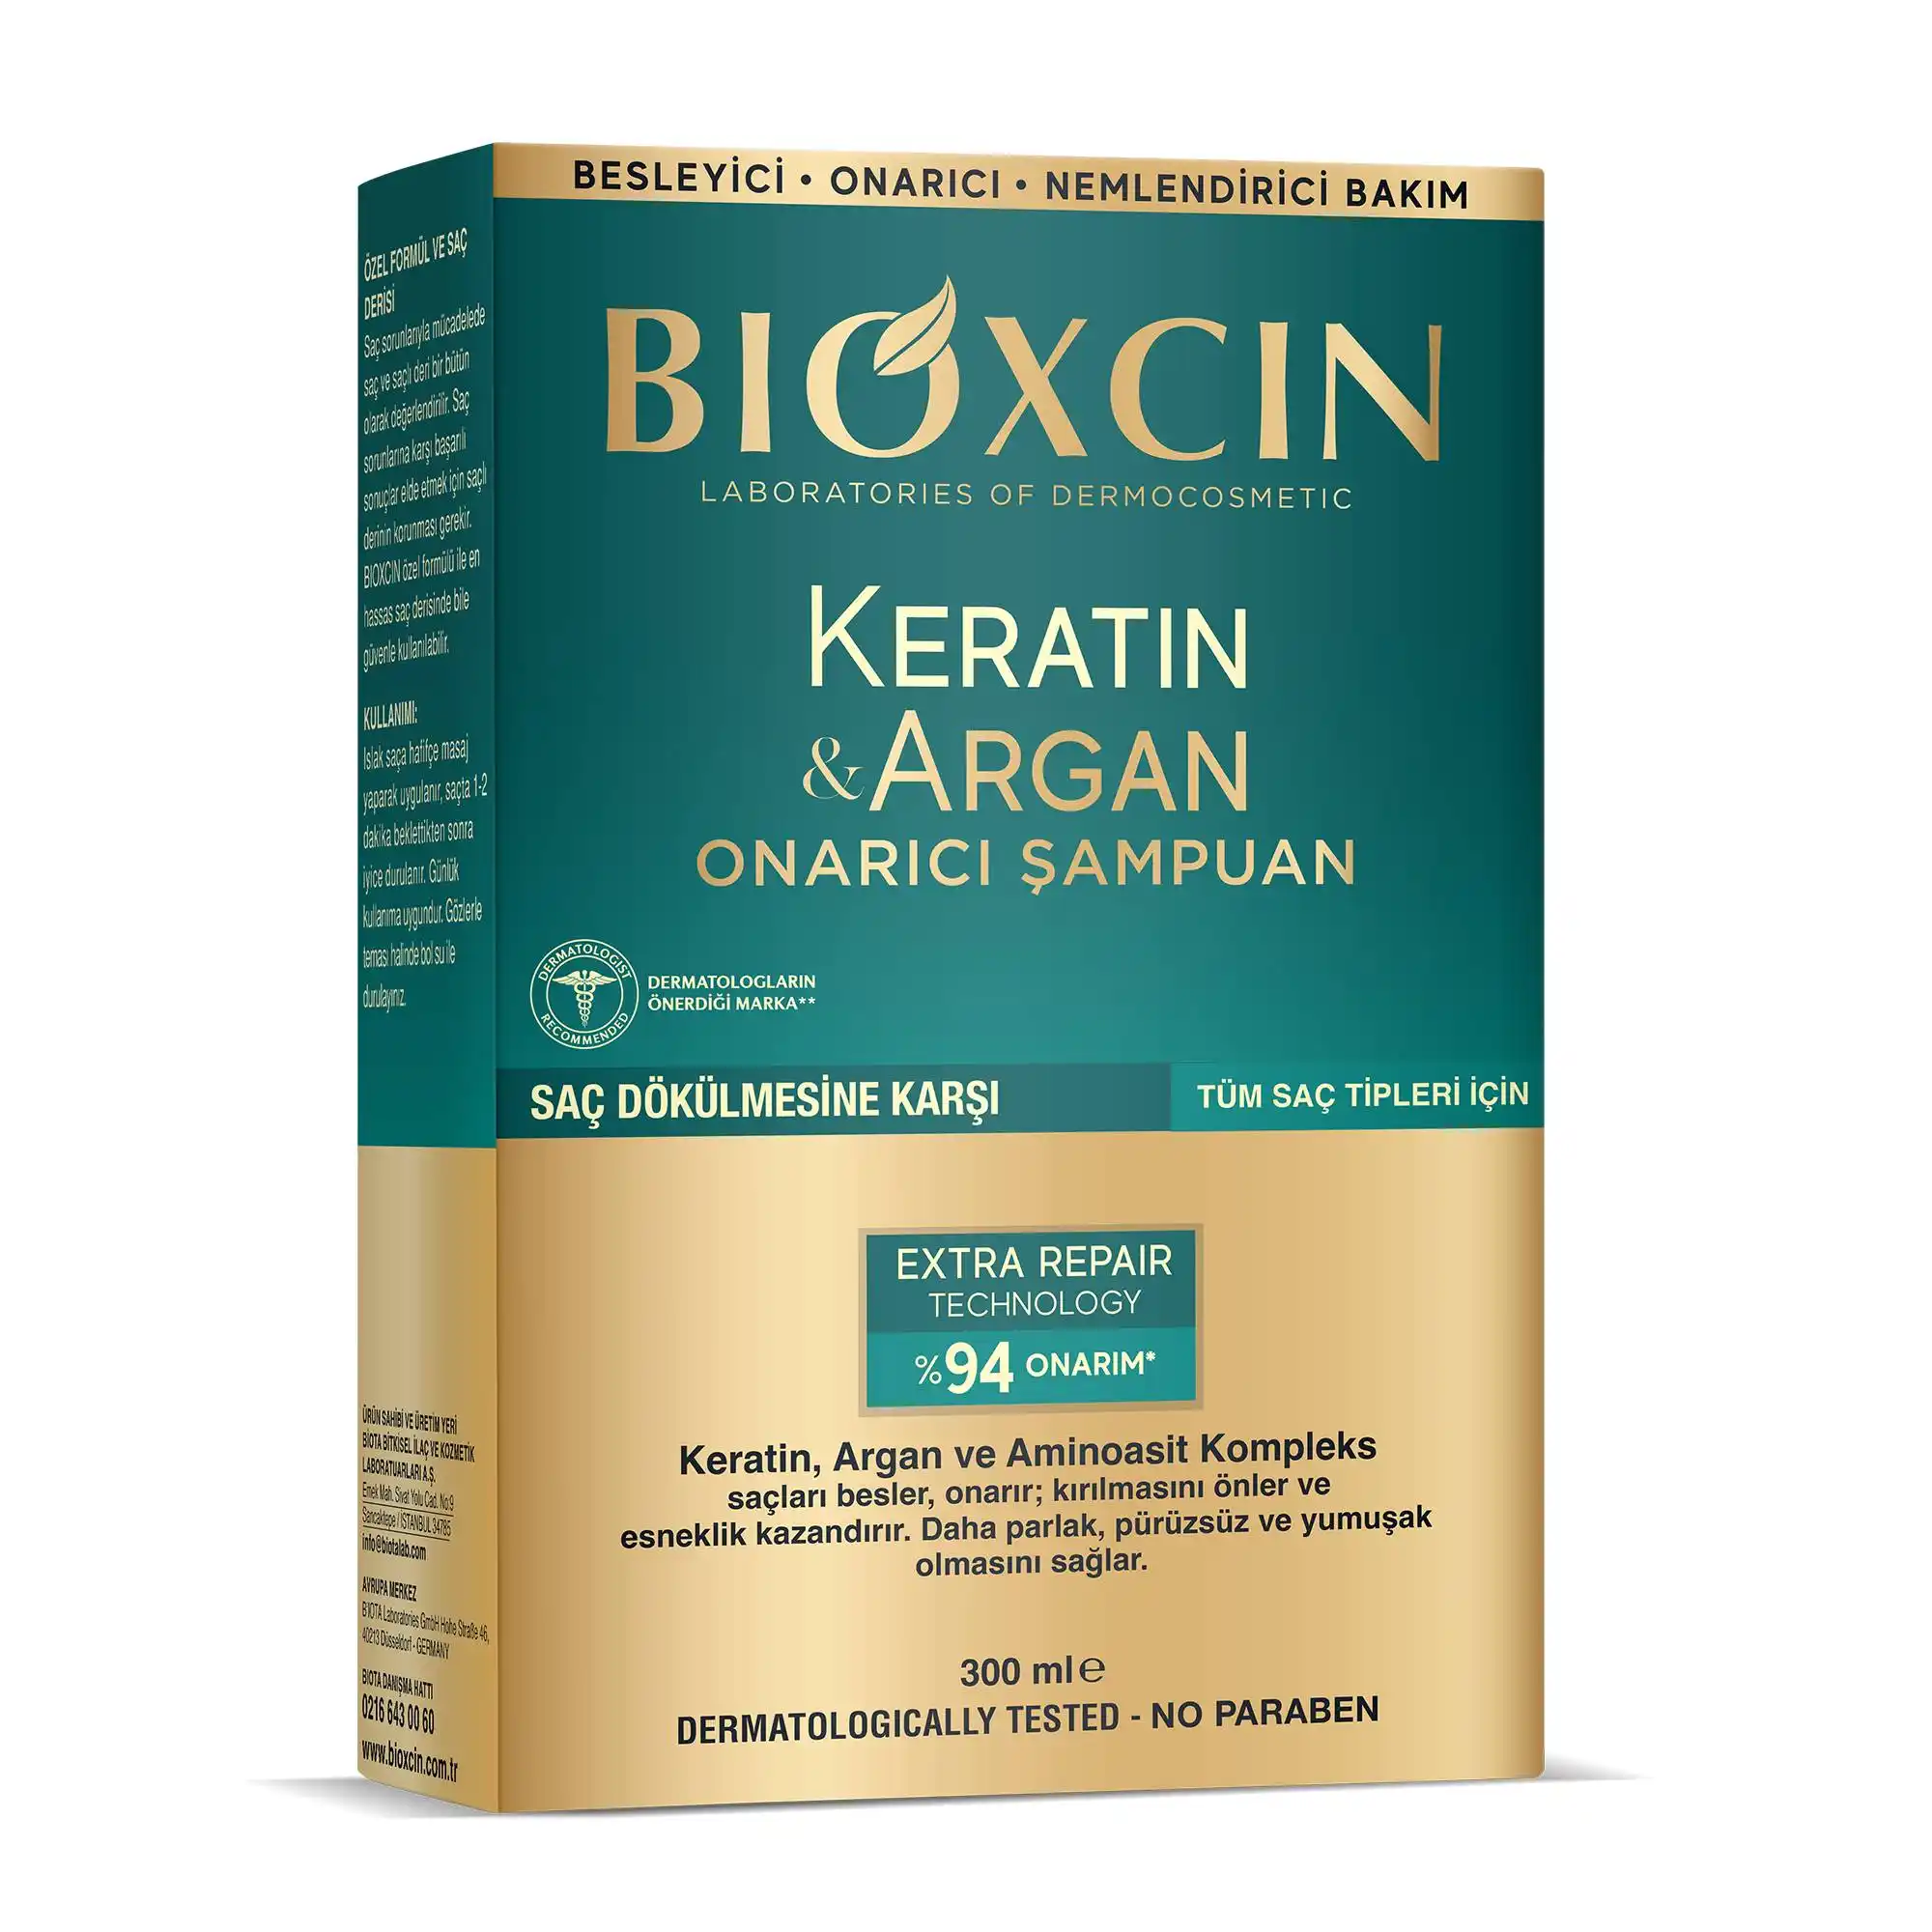 Bioxcin Keratin & Argan Serisi